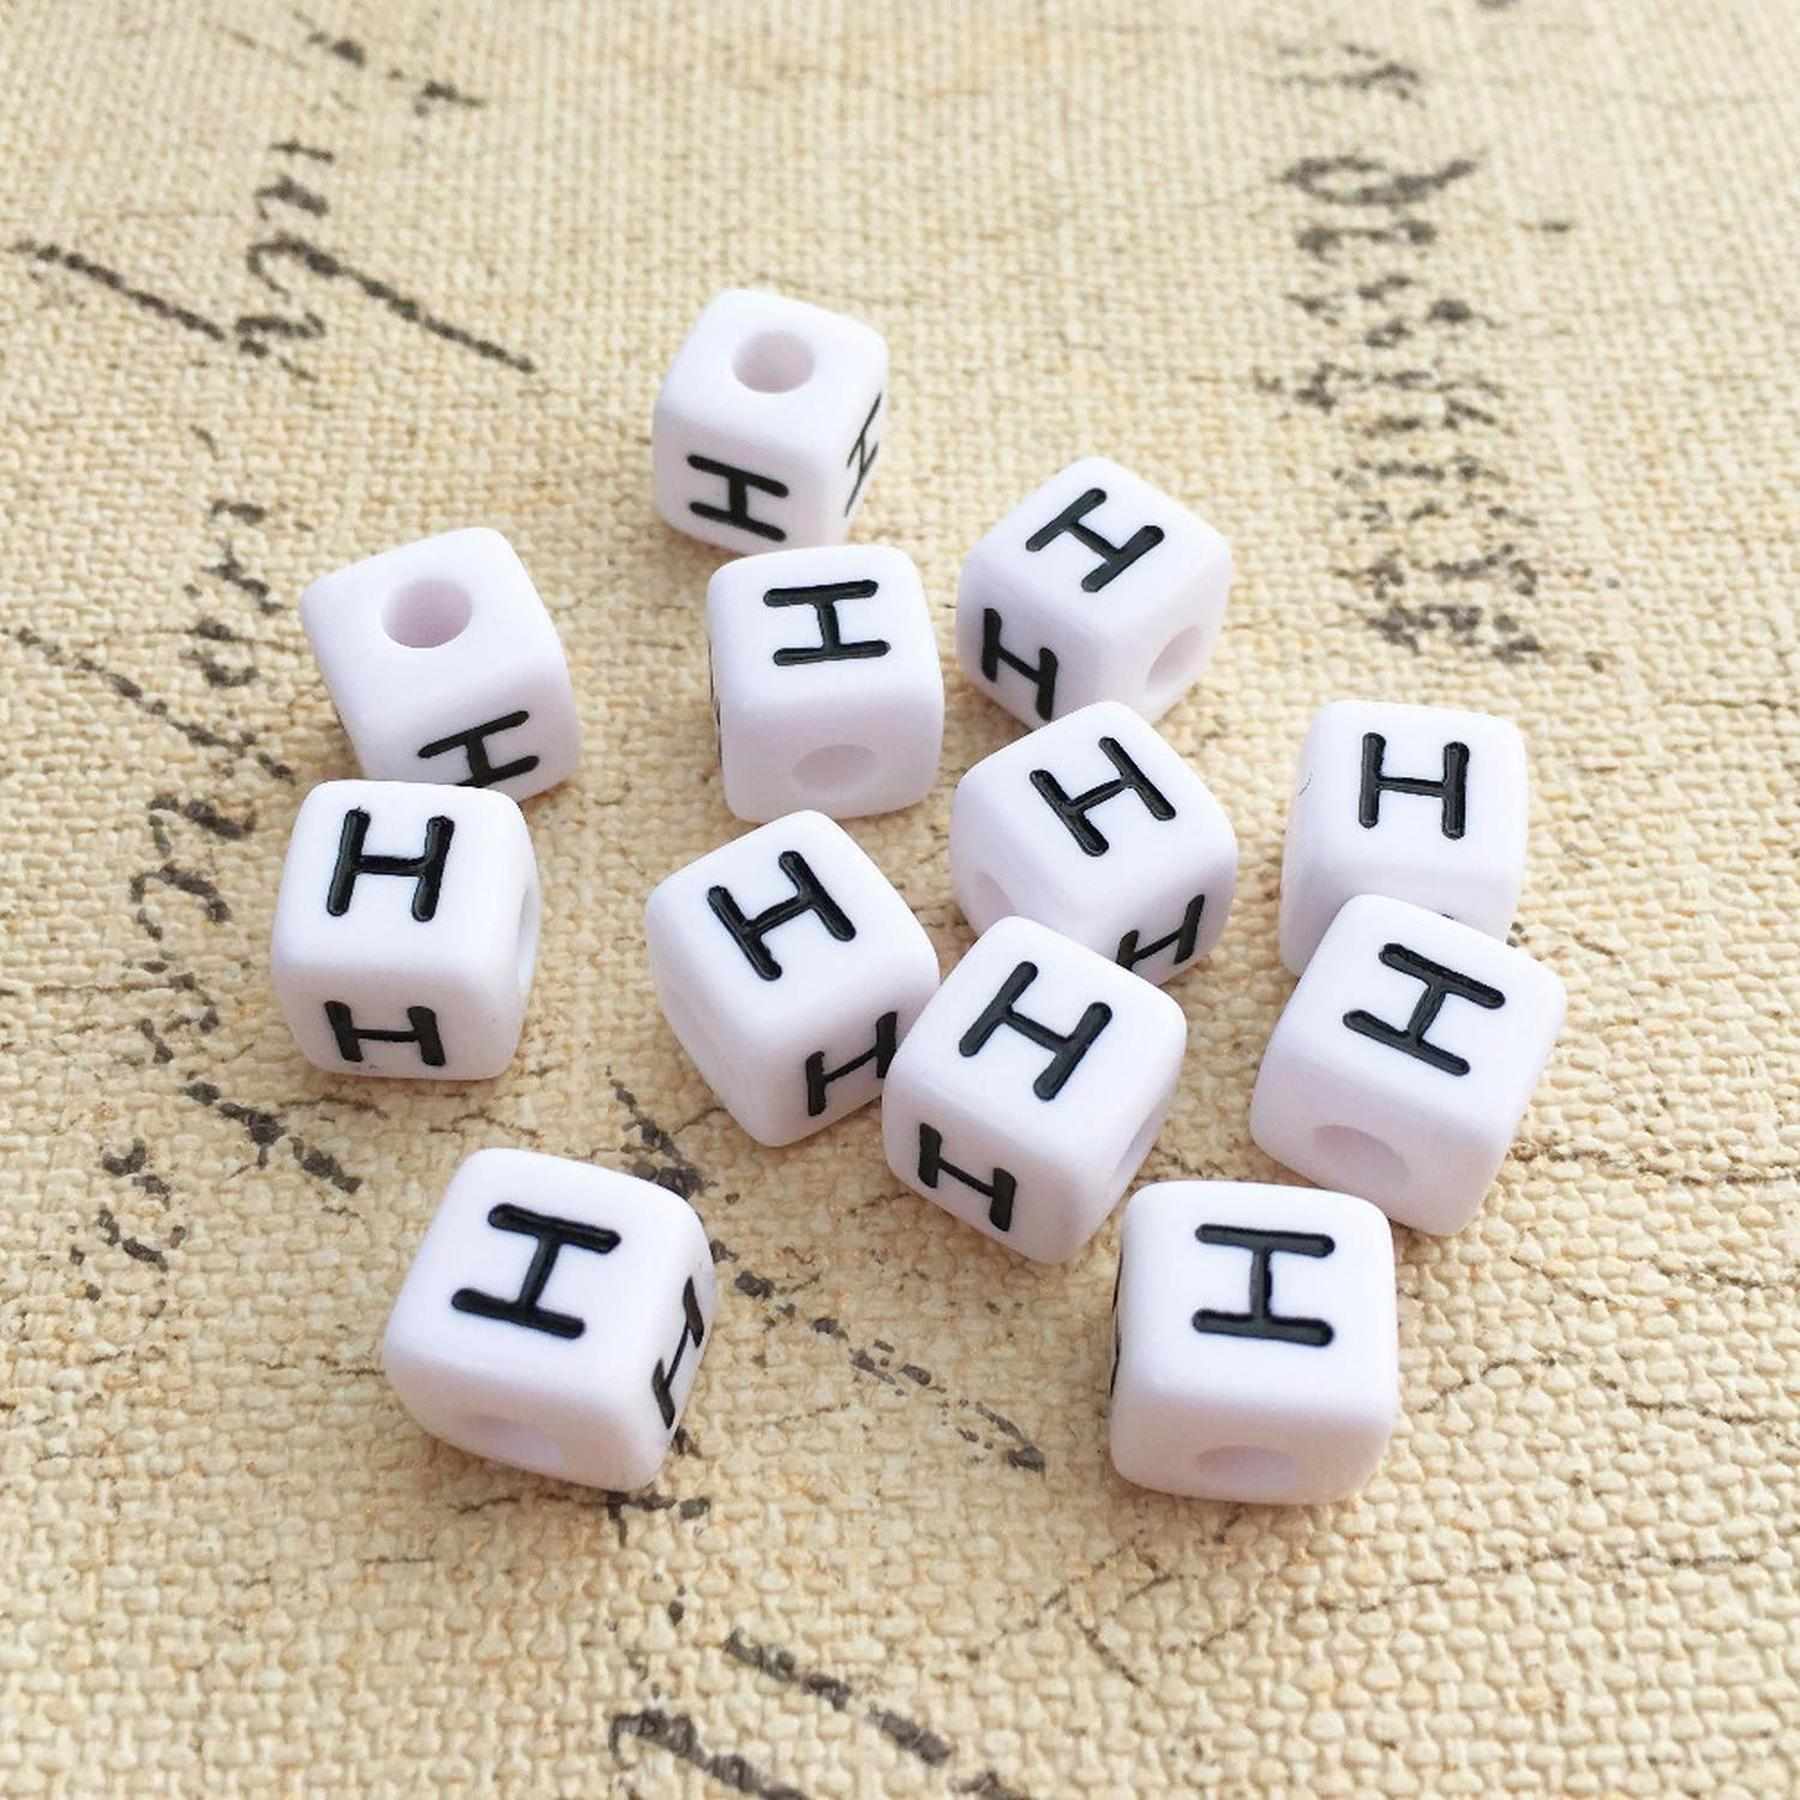 Buchstaben Perlen, 30 Stück, 6x6 mm, weiß mit schwarz, eckig, Buchstabe H